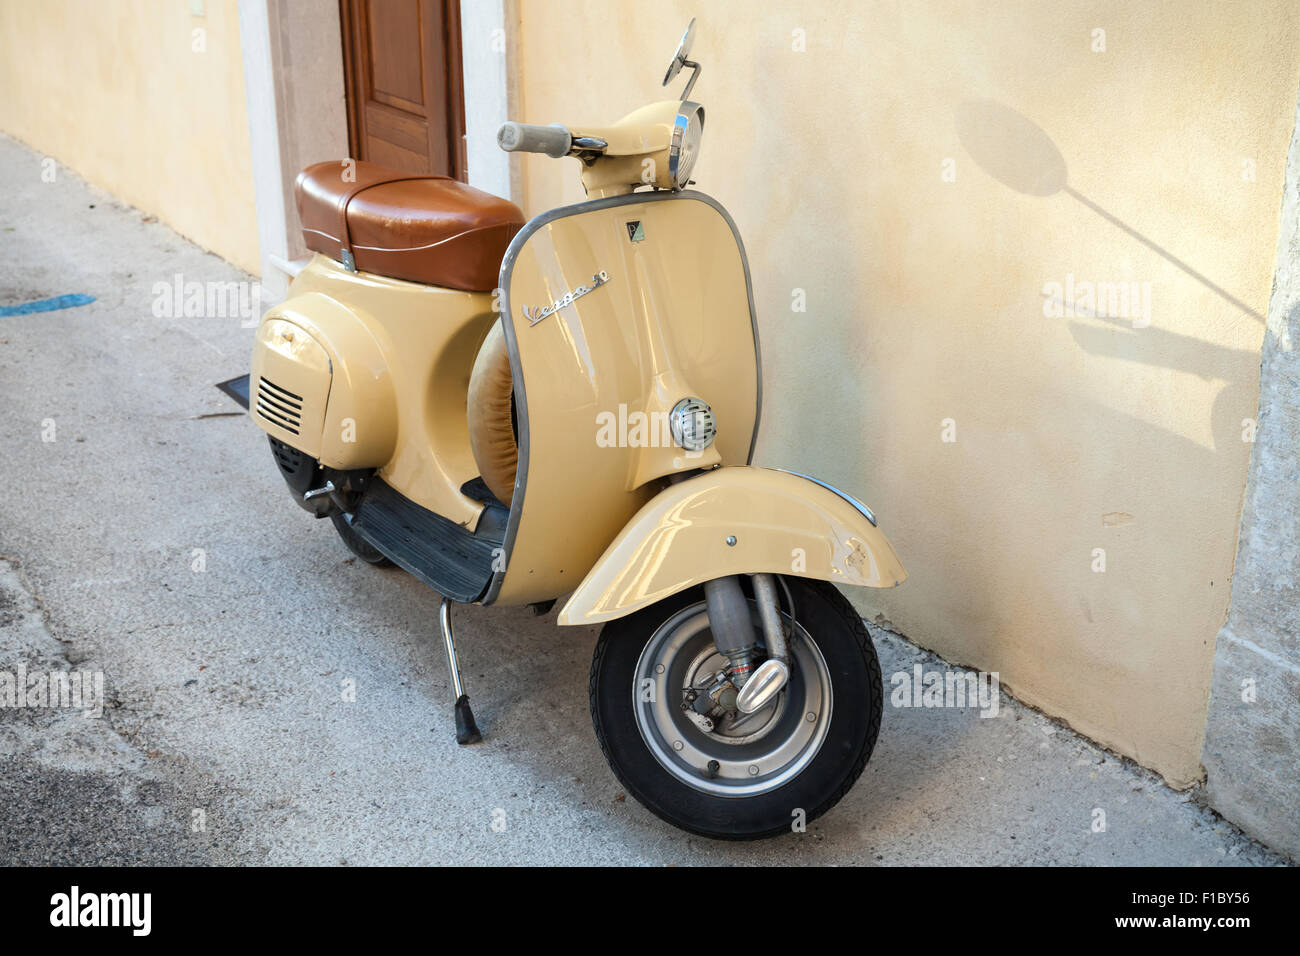 Gaeta, Italia - 19 agosto 2015: Classico giallo scooter Vespa sta parcheggiata vicino a parete Foto Stock